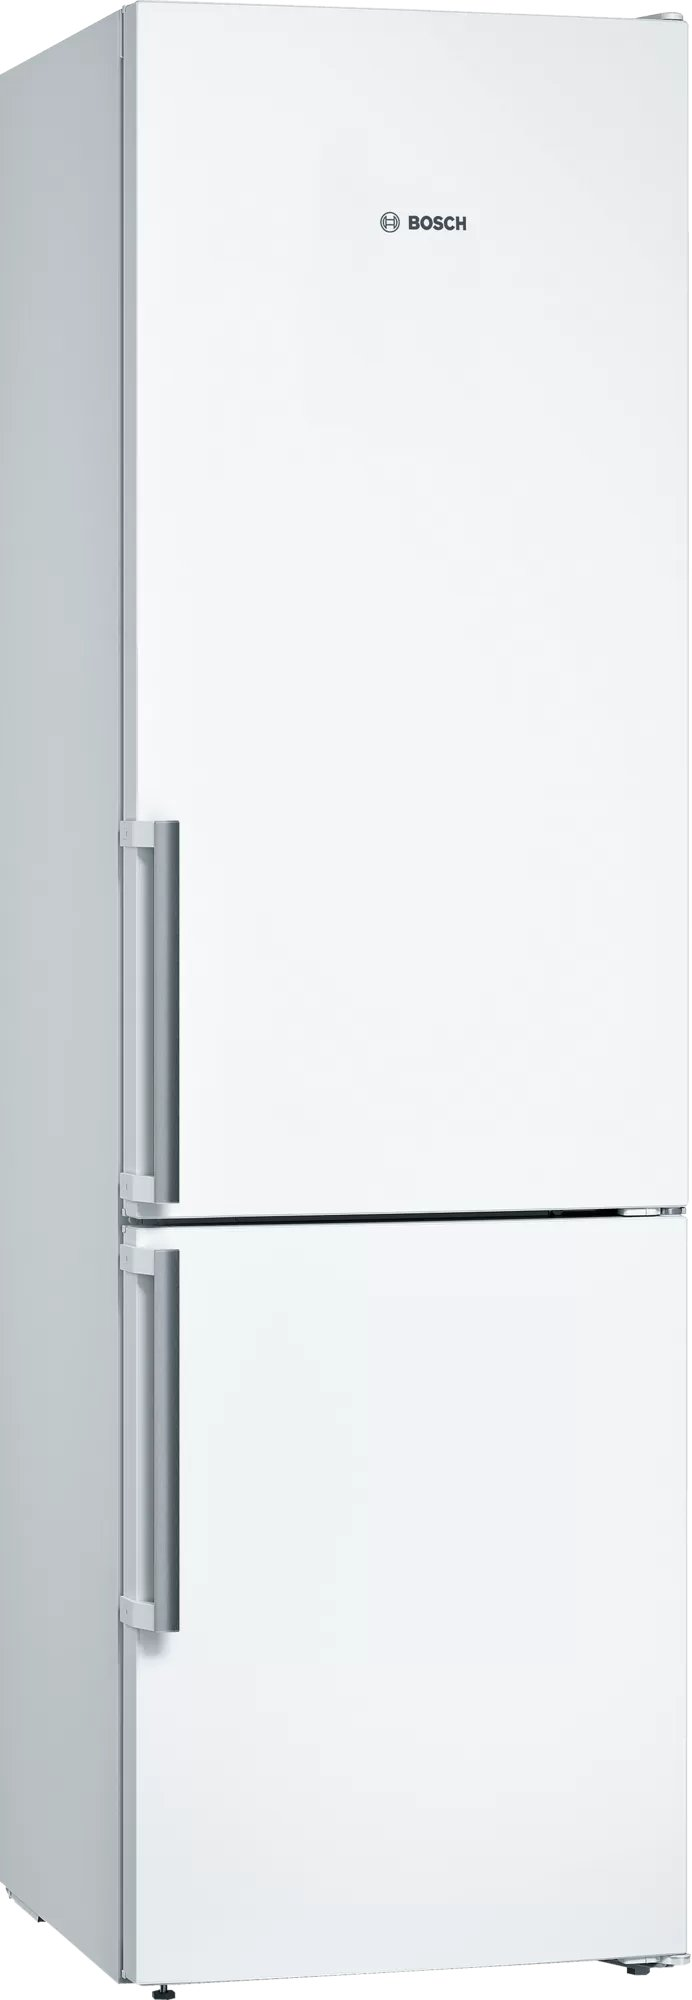 Холодильник Bosch KGN39VWEQ белый навесная панель на двухкамерный холодильник bosch variostyle kgn 39 ij 3 ar со сменной панелью розовый пудровый